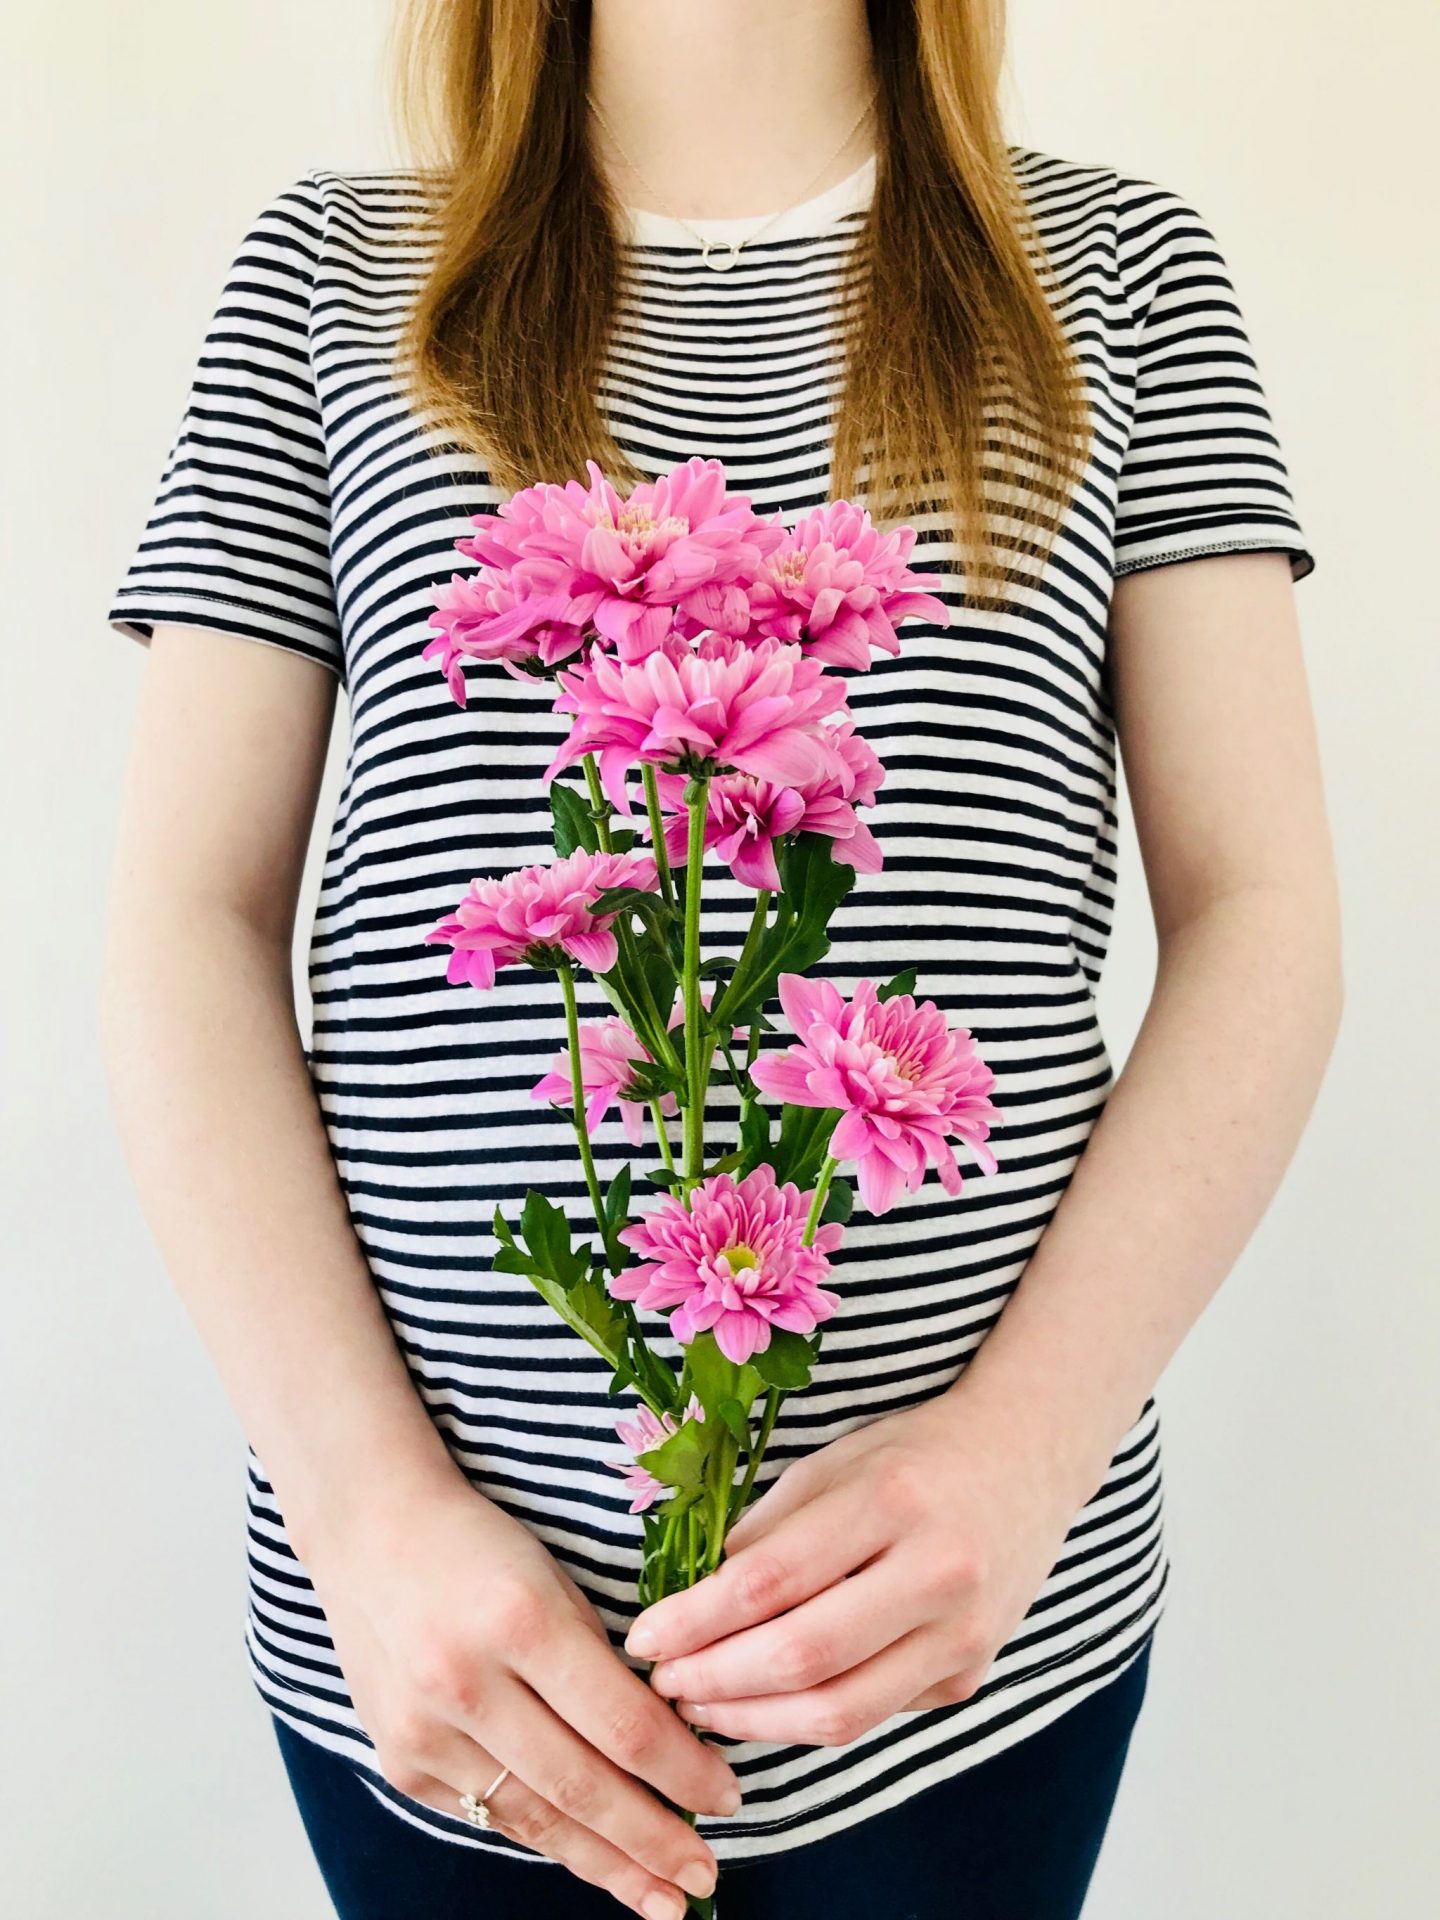 Spring summer maternity haul JoJo Maman Bébé Tiffany rose new look Topshop